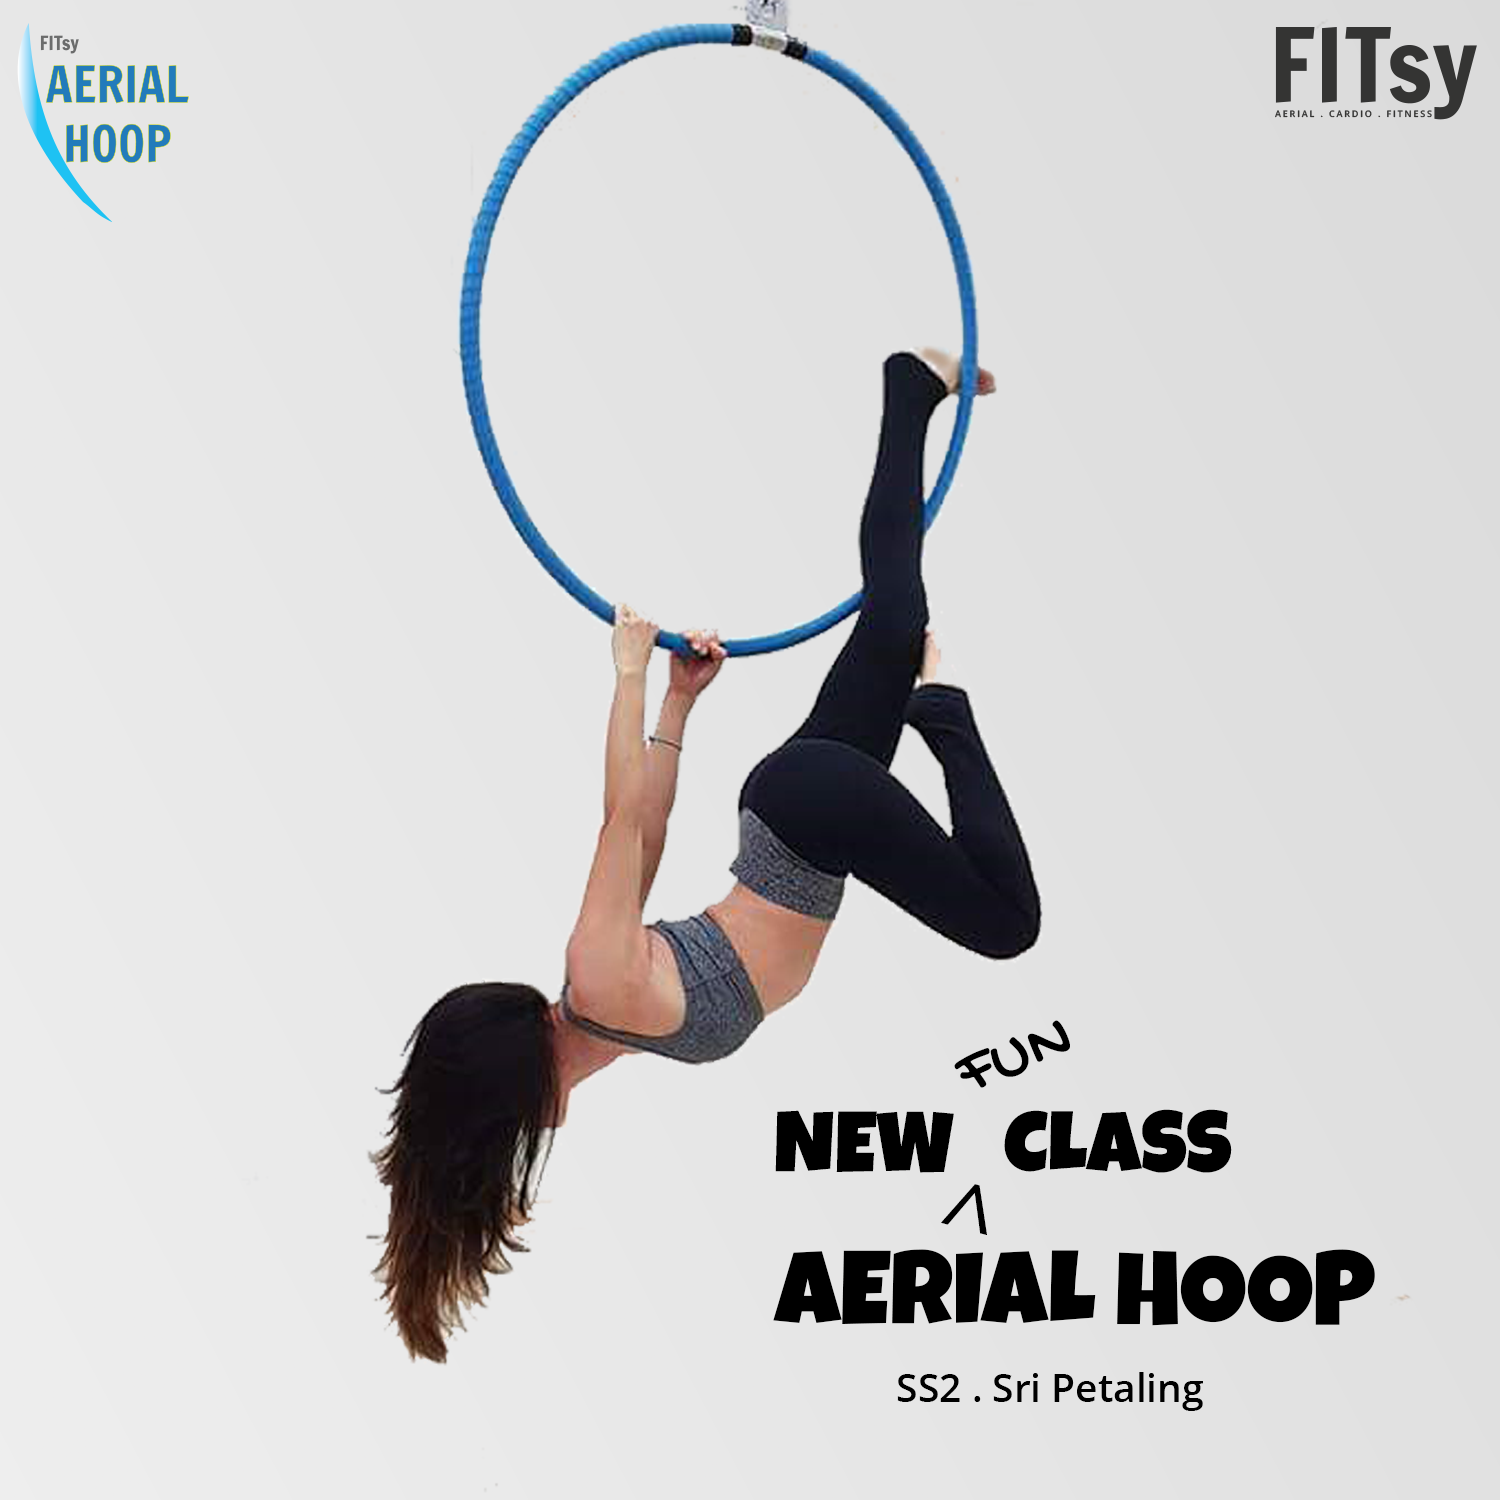 Aerial Hoop class